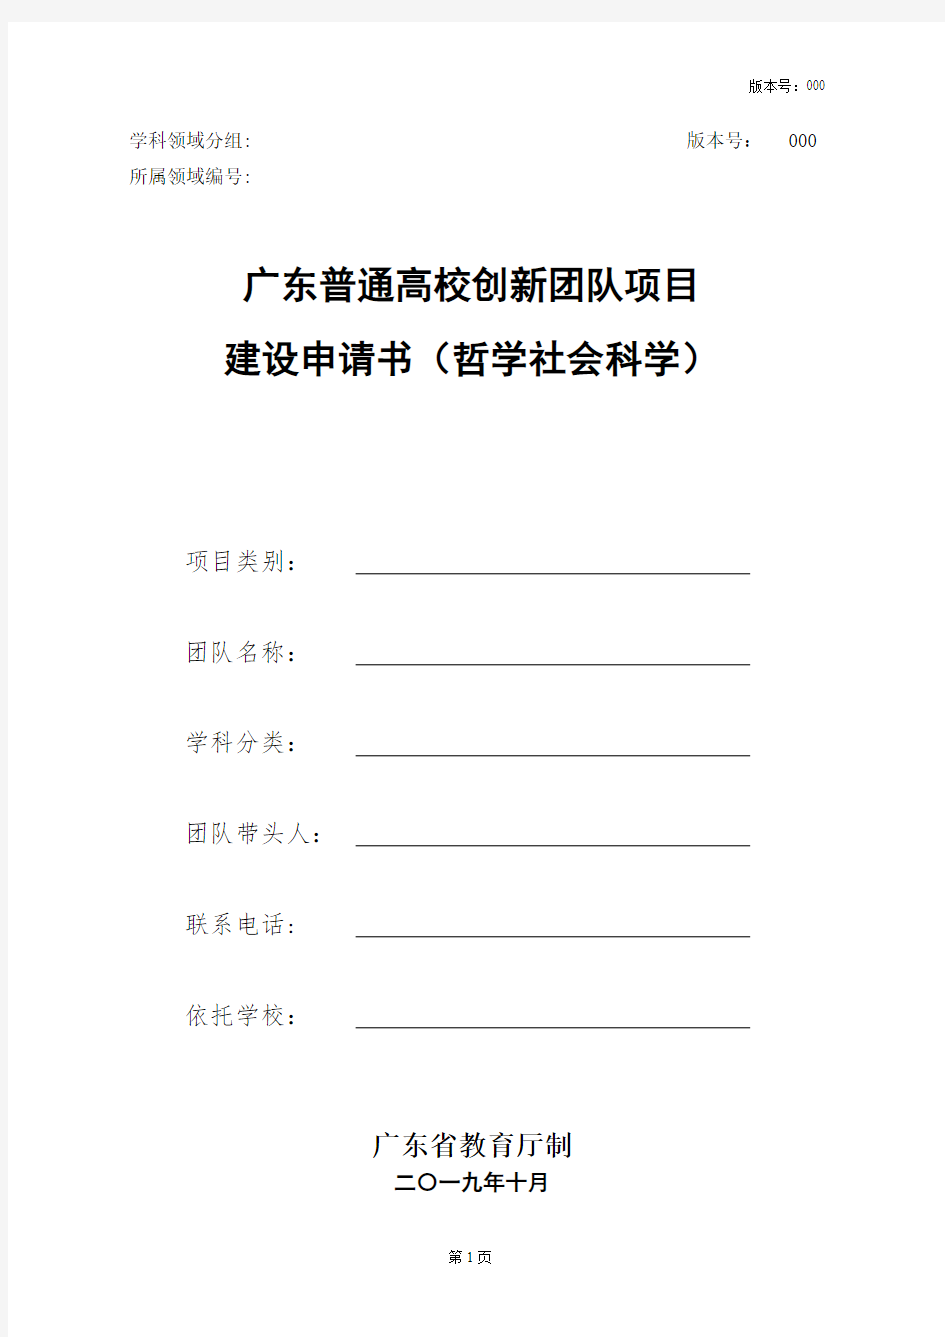 广东普通高校创新团队项目建设申请书(哲学社会科学)